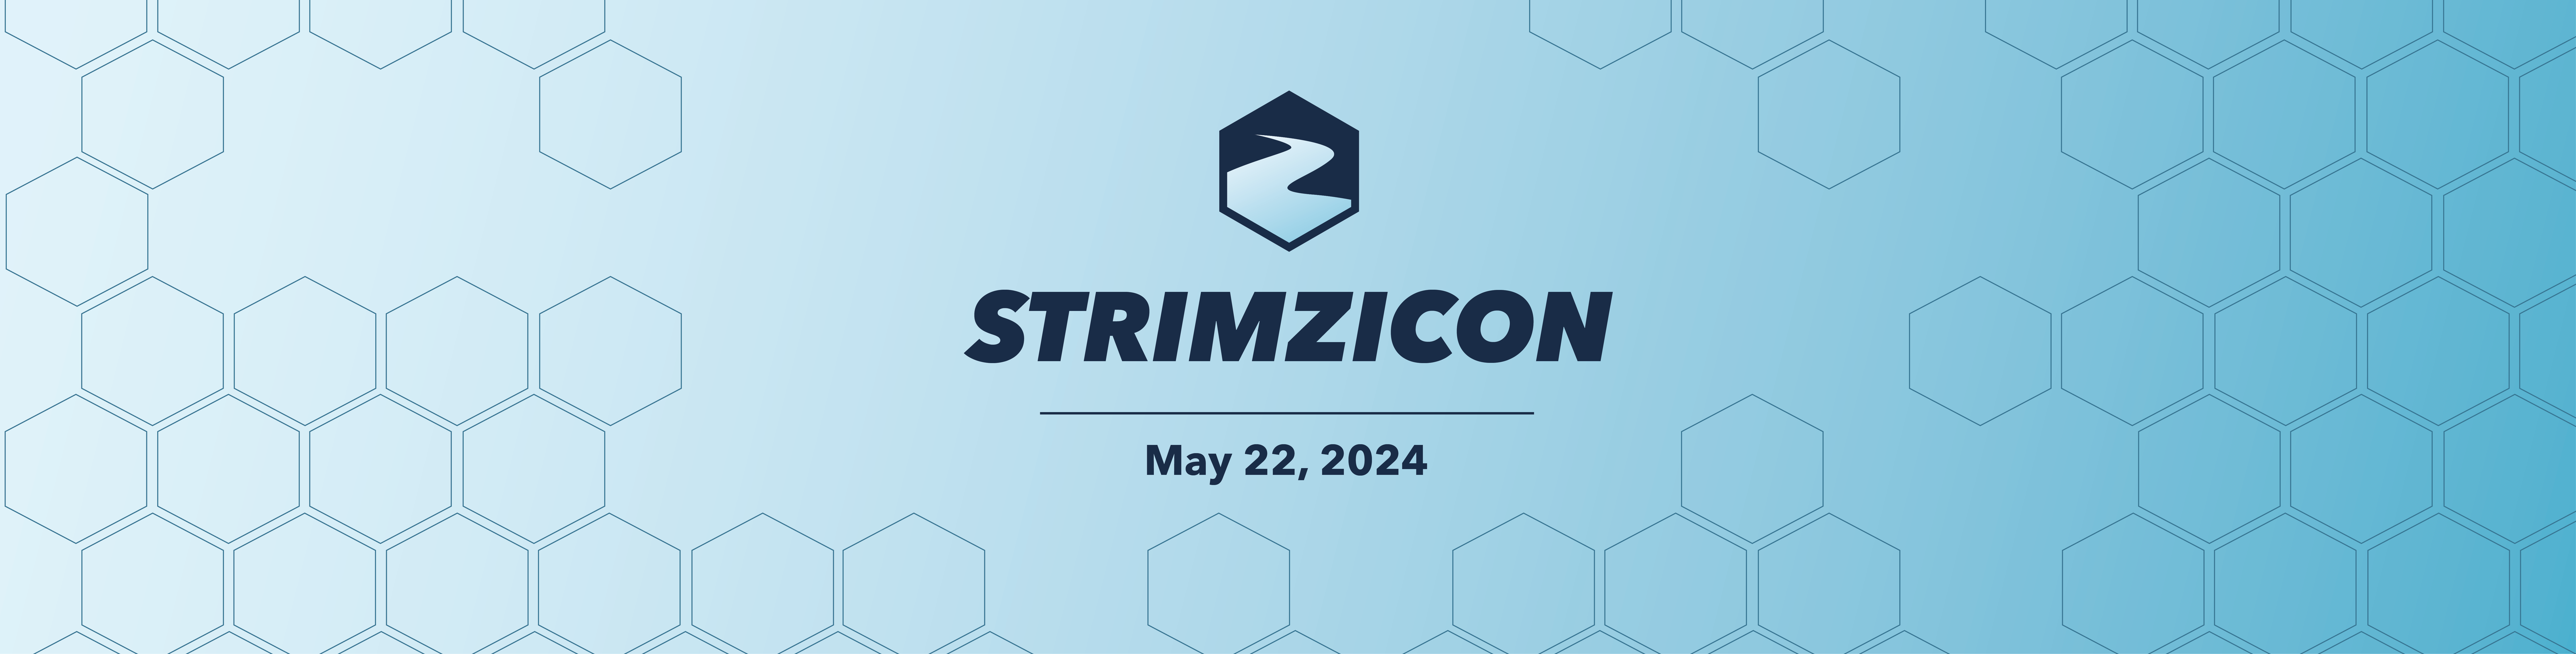 StrimziCon 2024 Banner